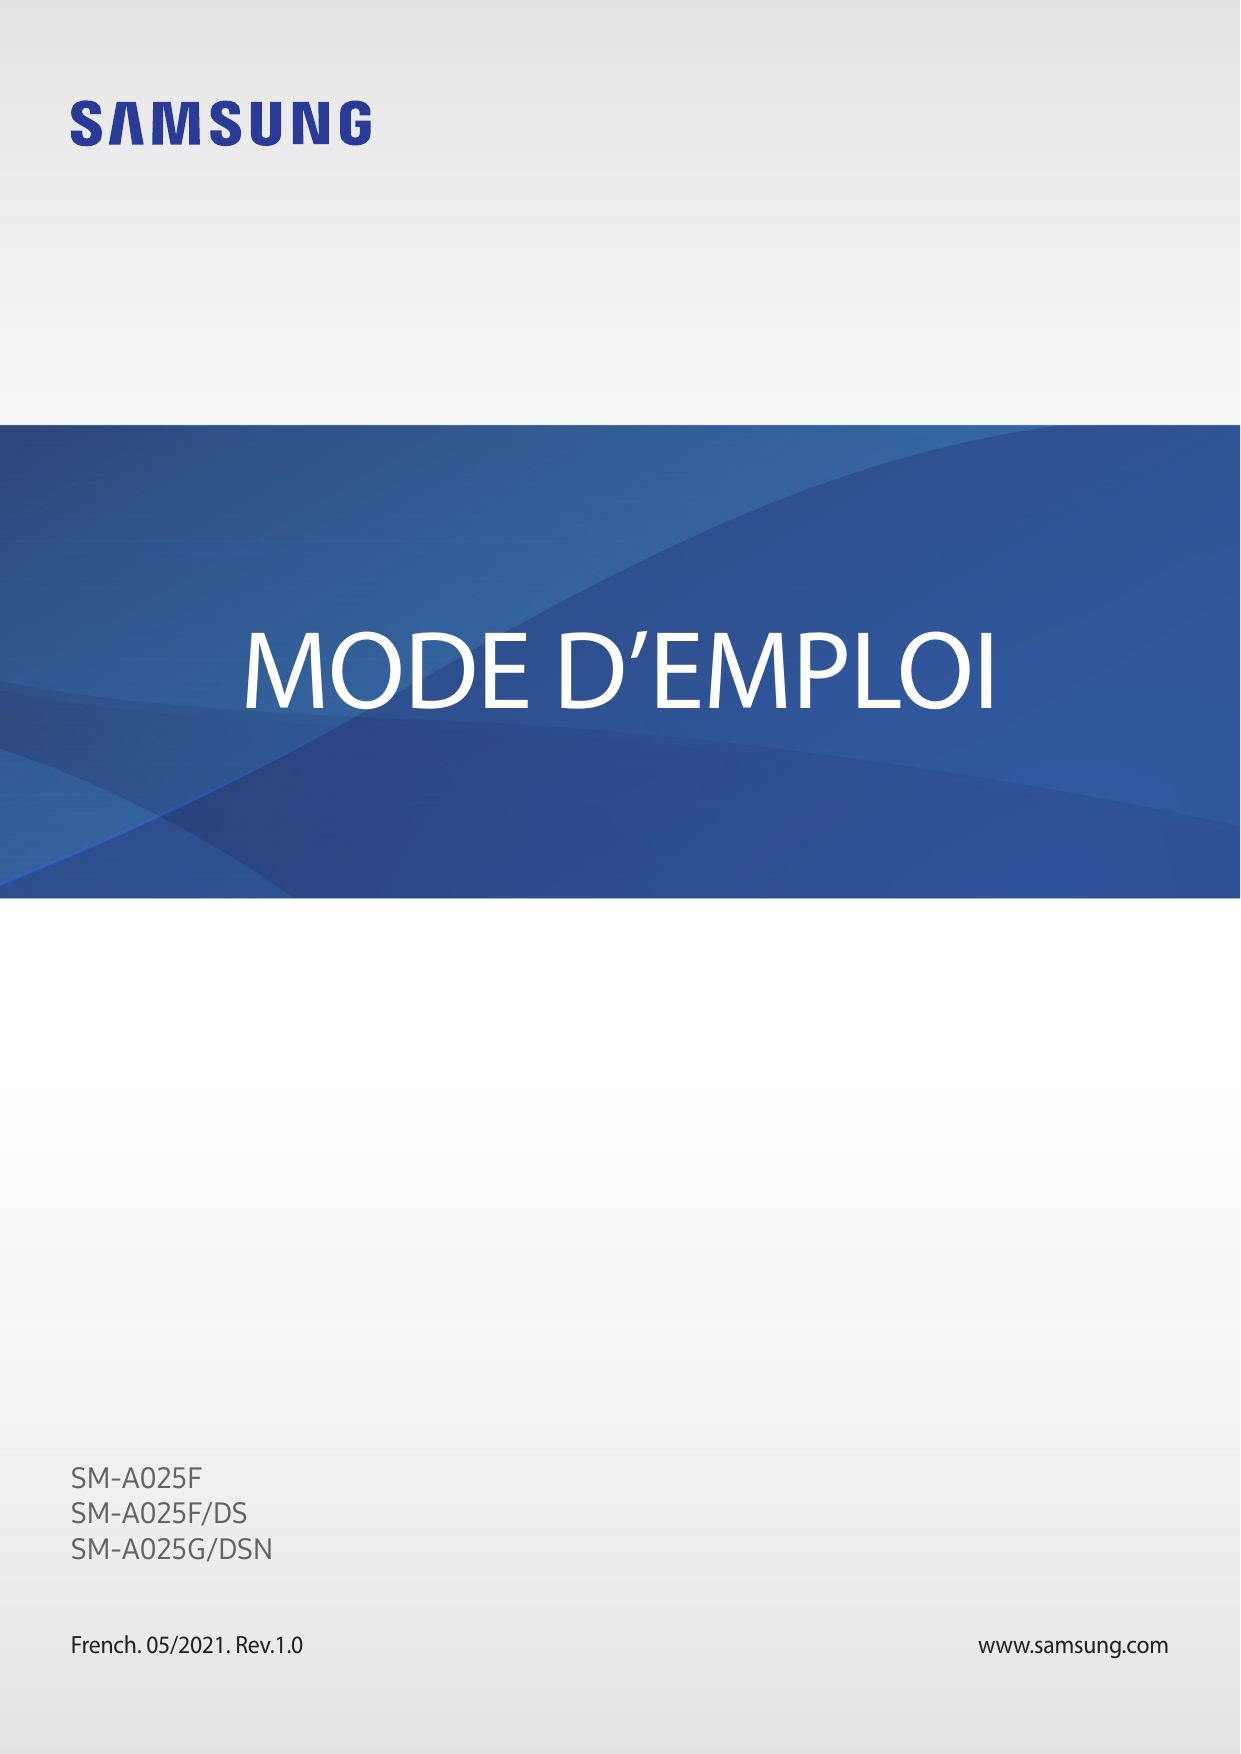 MODE D’EMPLOISM-A025FSM-A025F/DSSM-A025G/DSNFrench. 05/2021. Rev.1.0www.samsung.com